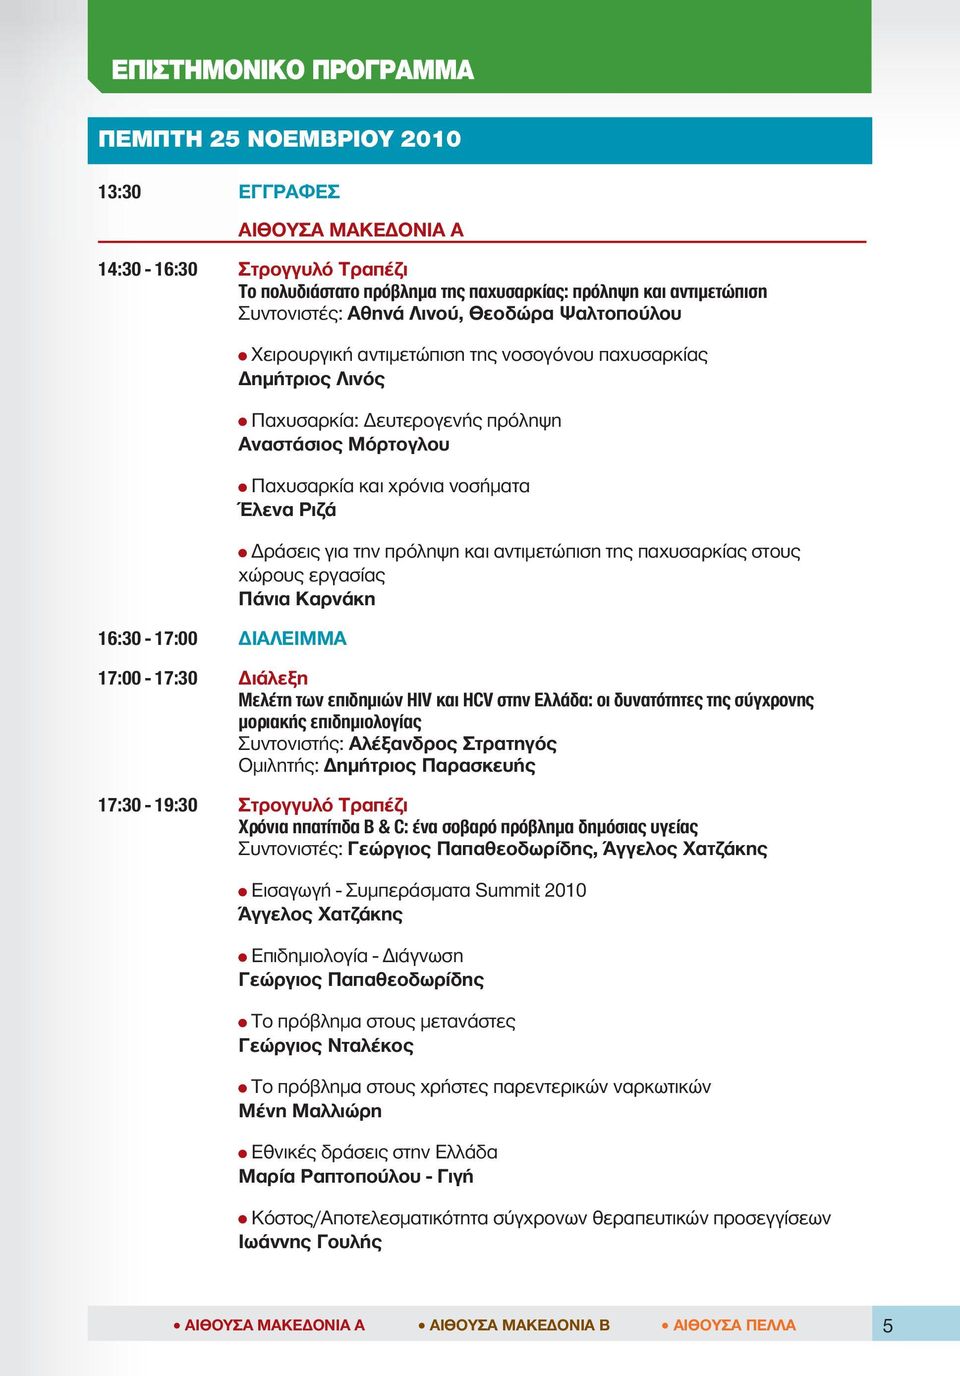 και αντιμετώπιση της παχυσαρκίας στους χώρους εργασίας Πάνια Καρνάκη 17:00-17:30 Διάλεξη Μελέτη των επιδημιών HIV και HCV στην Ελλάδα: οι δυνατότητες της σύγχρονης μοριακής επιδημιολογίας